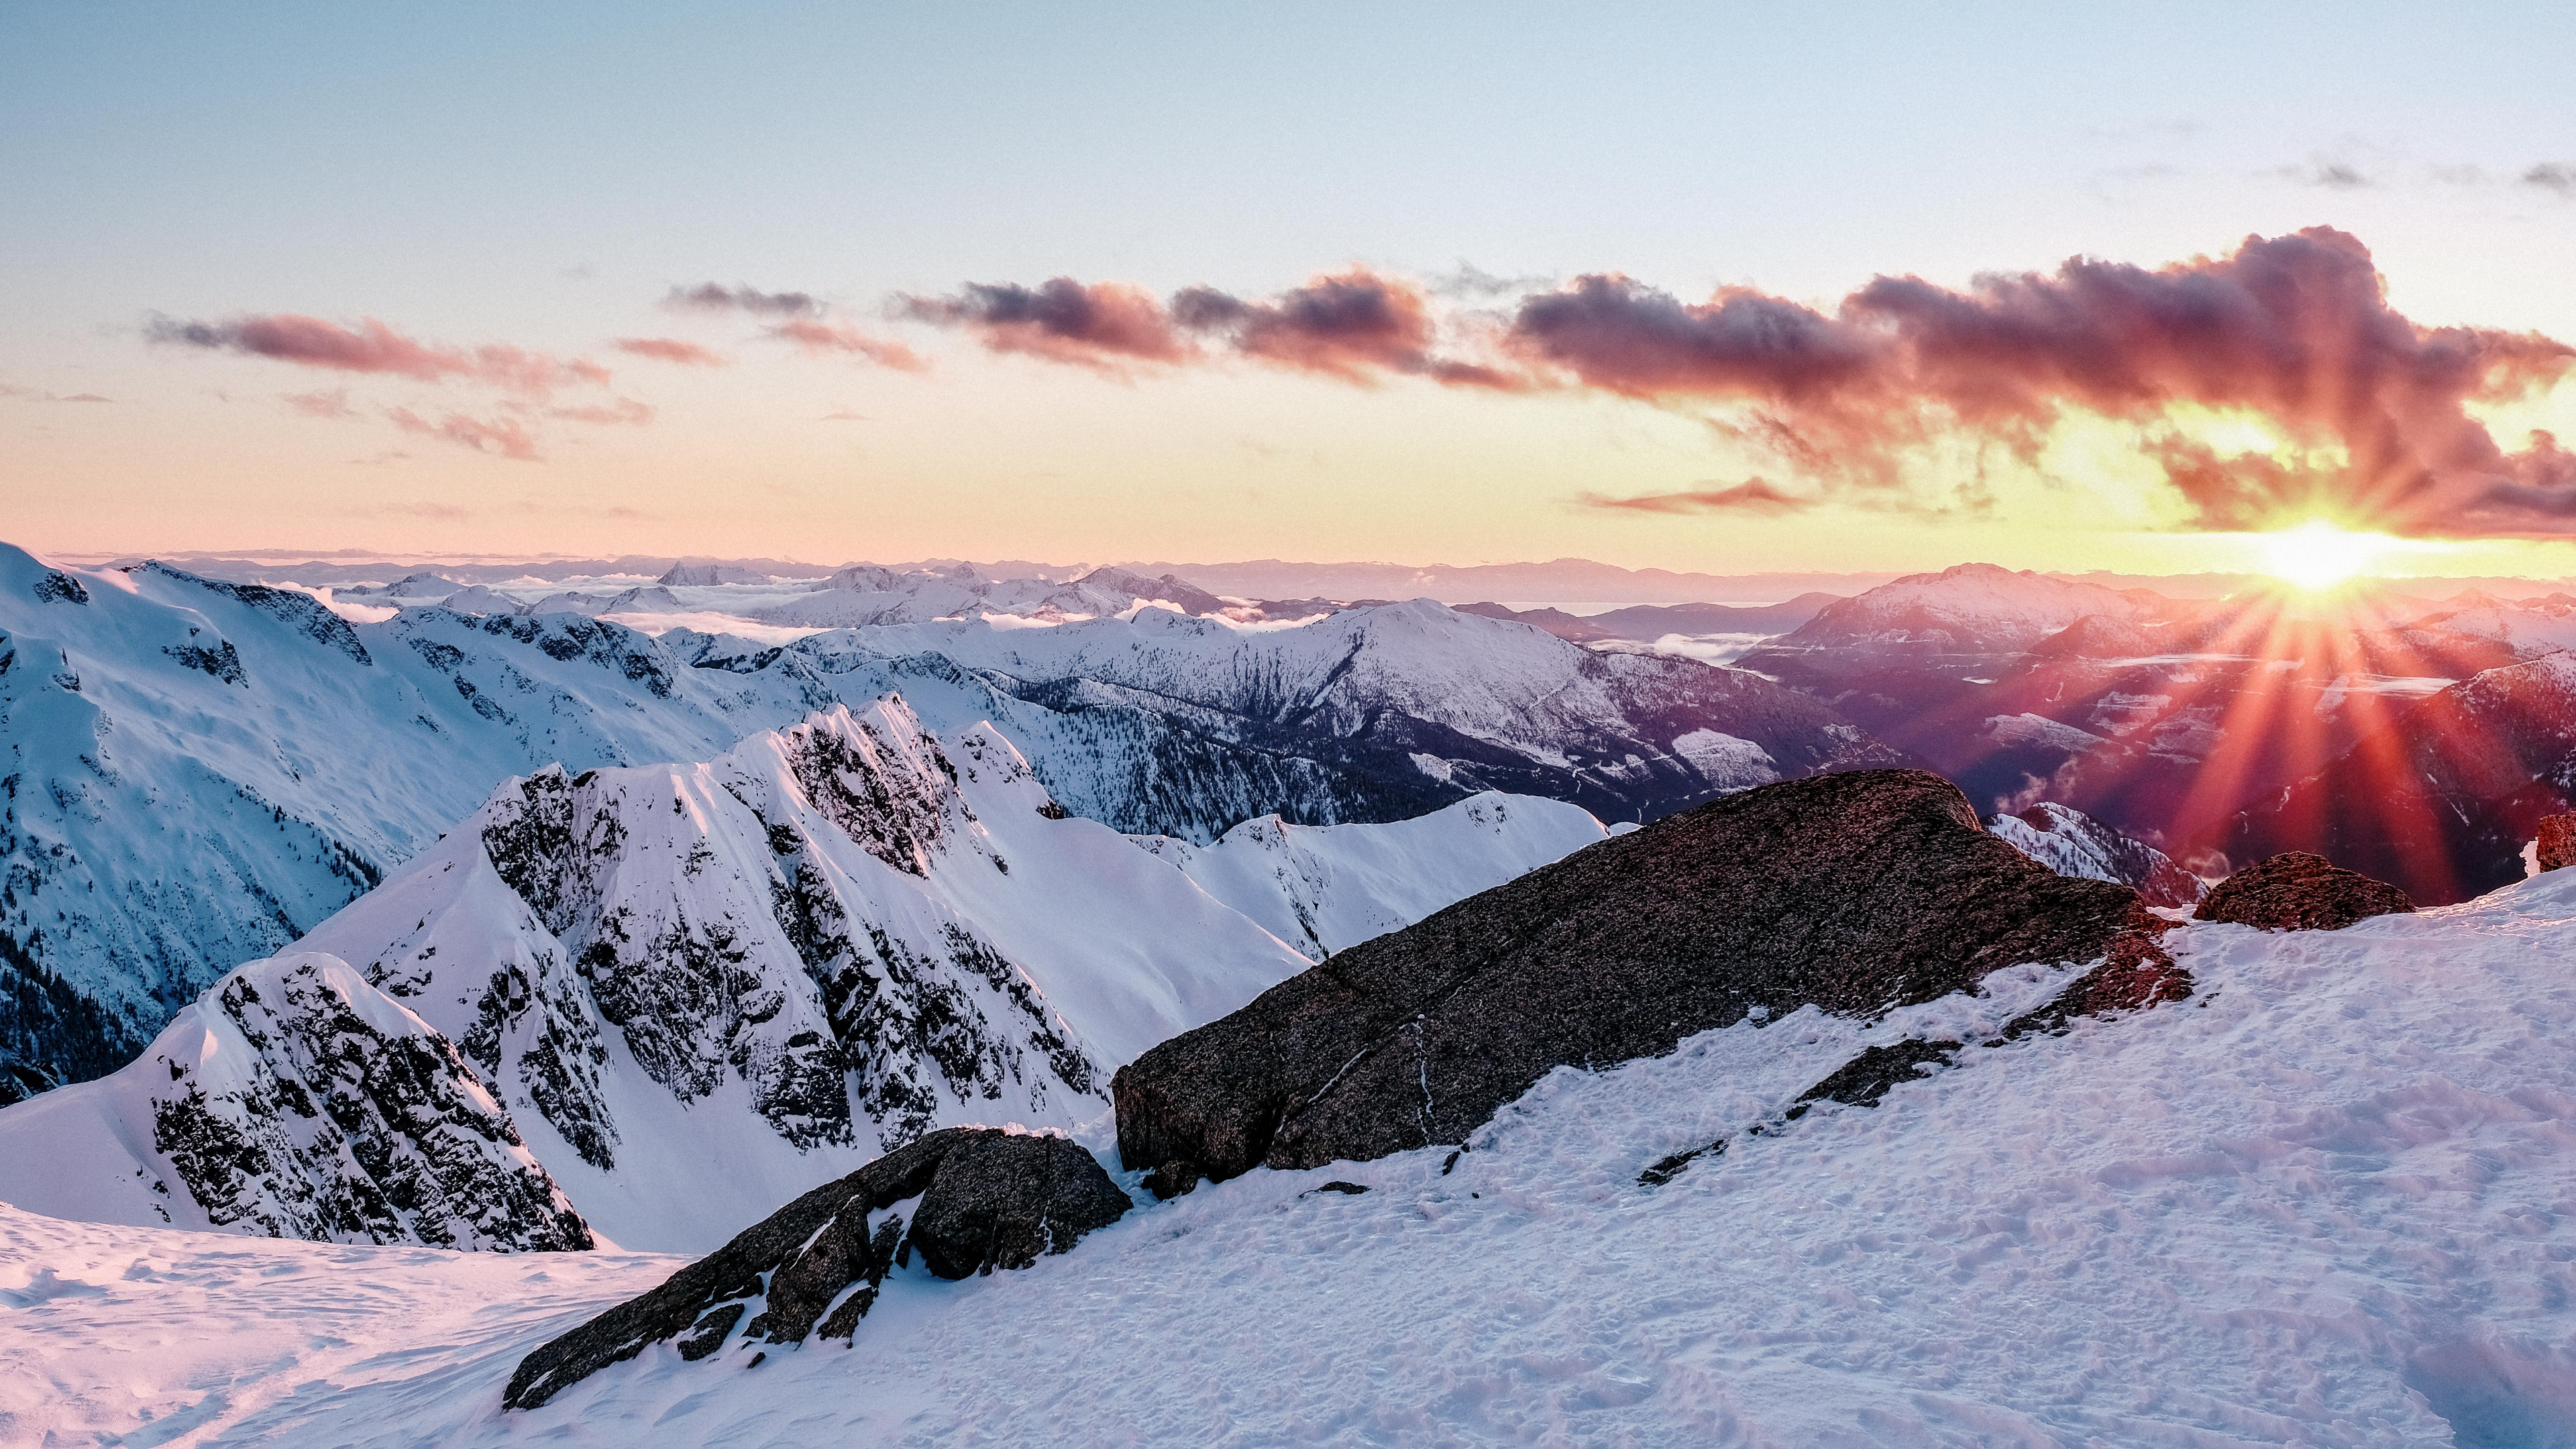 Las Formaciones Montañosas, Montaña, Nieve, Invierno, Naturaleza. Wallpaper in 3840x2160 Resolution